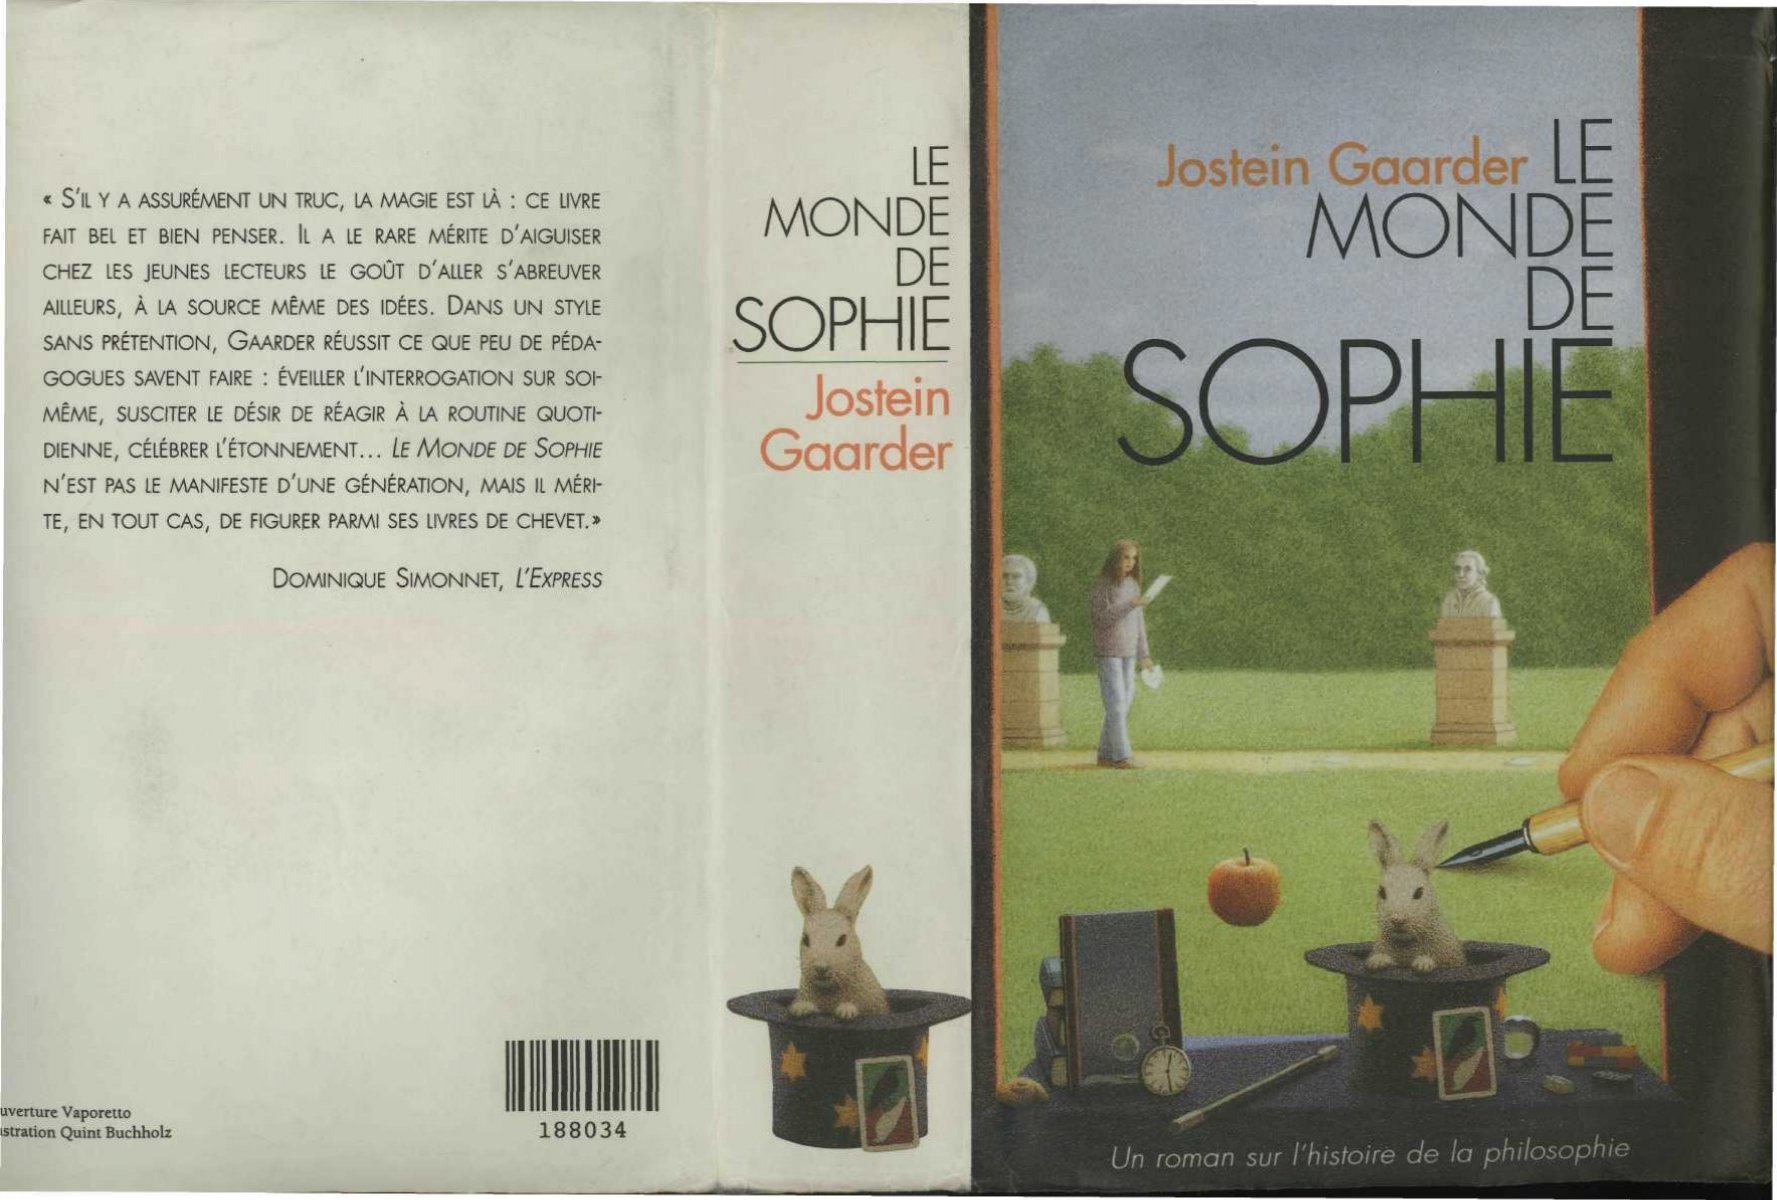 Le Monde de Sophie, Jostein Gaarder, Points - Café Powell